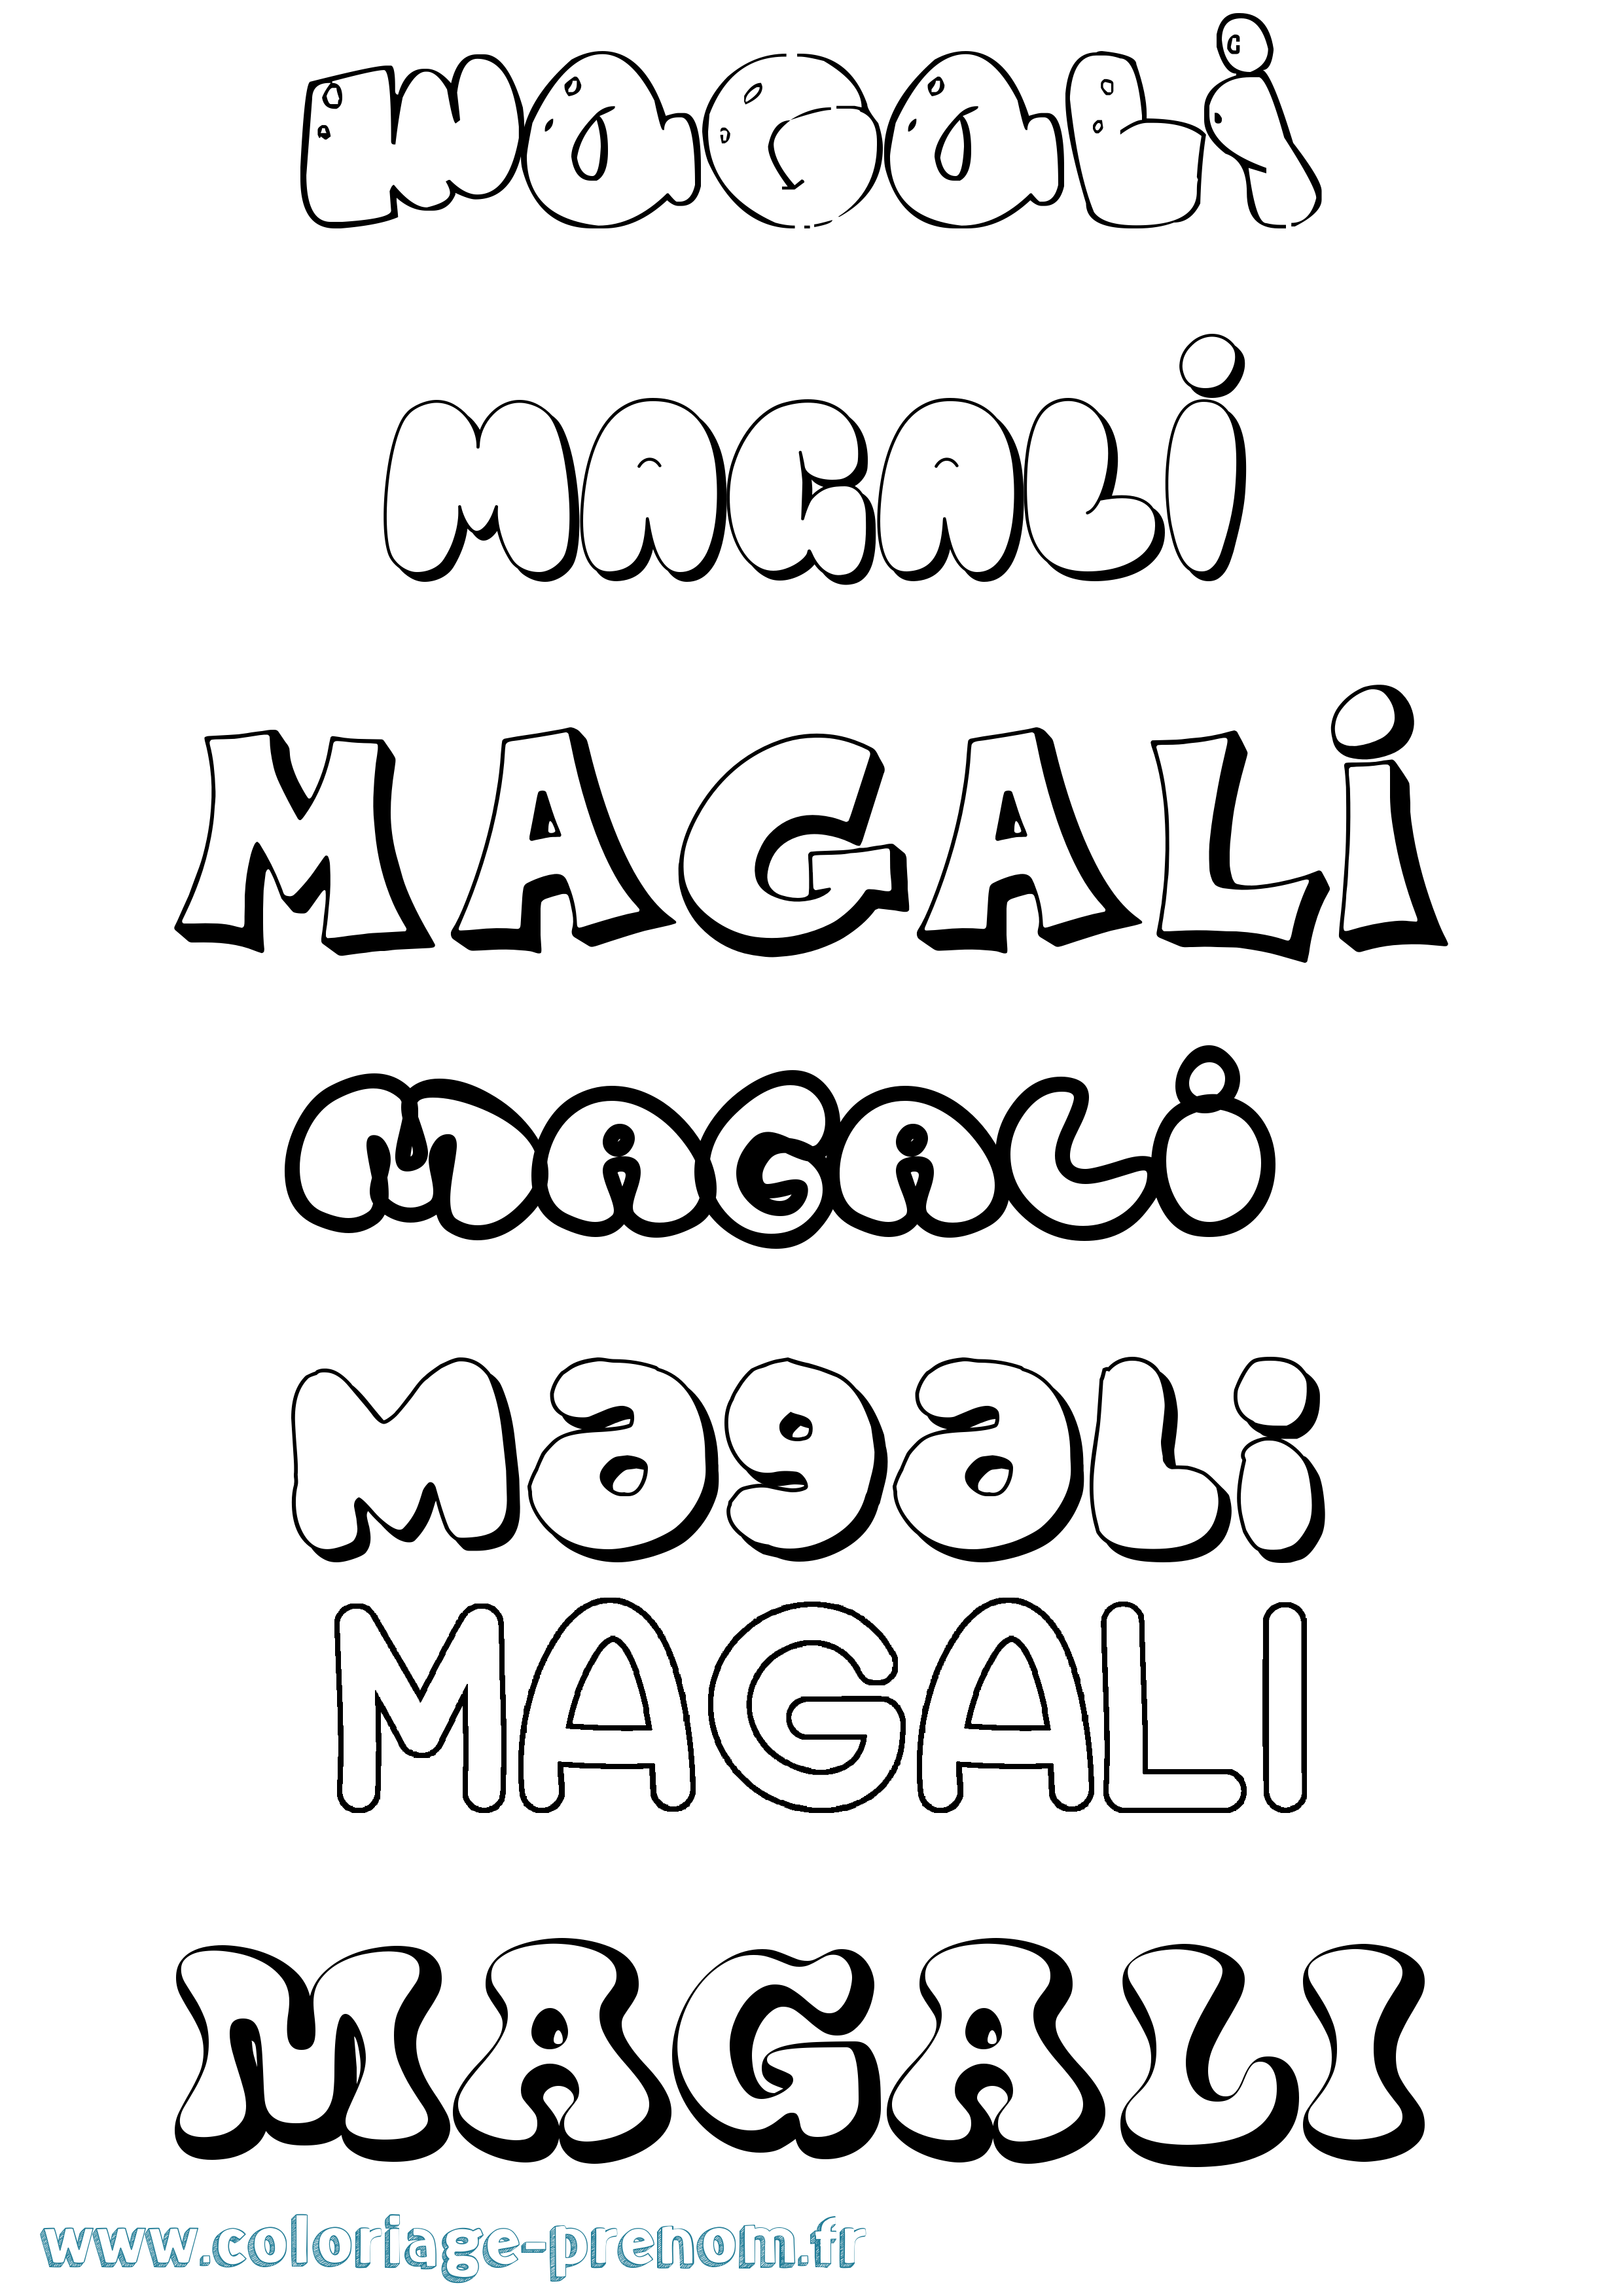 Coloriage prénom Magali Bubble